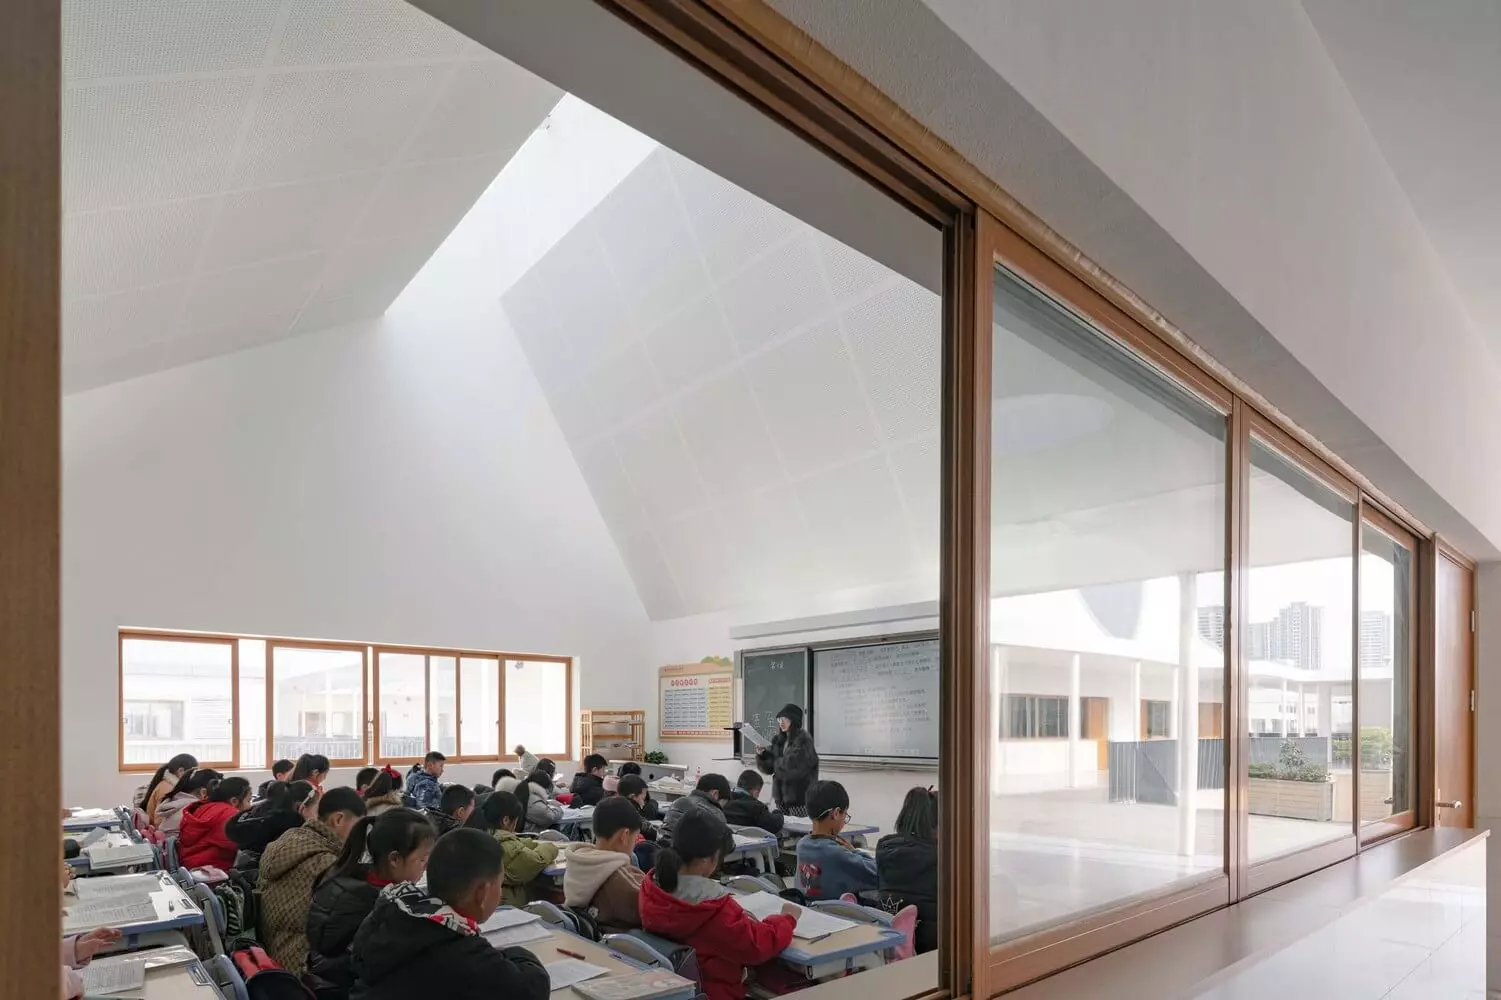 Một lớp học tại trường tiểu học Qingyijiang, Trung Quốc theo phong cách tối giản